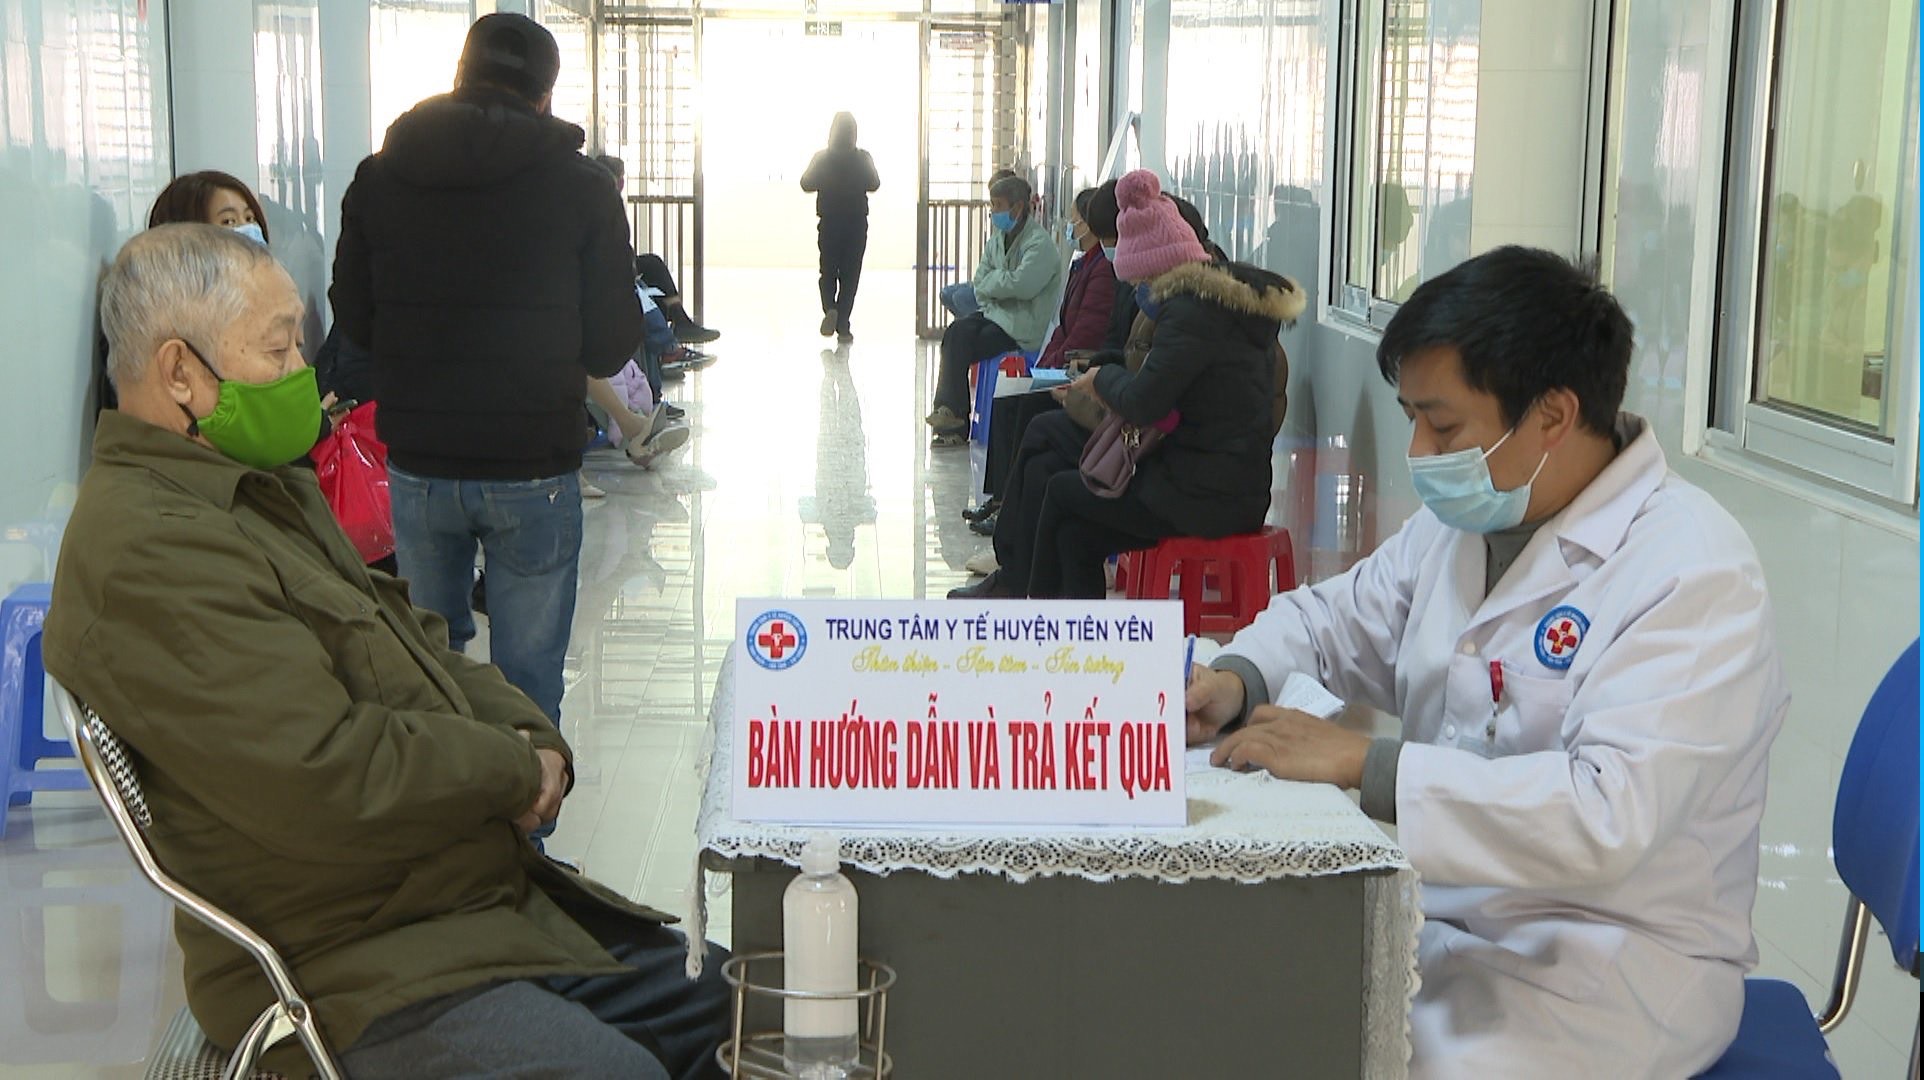 Cán bộ Trung tâm Y tế huyện Tiên Yên hướng dẫn người dân các thủ tục y tế, đảm bảo quy định phòng dịch.